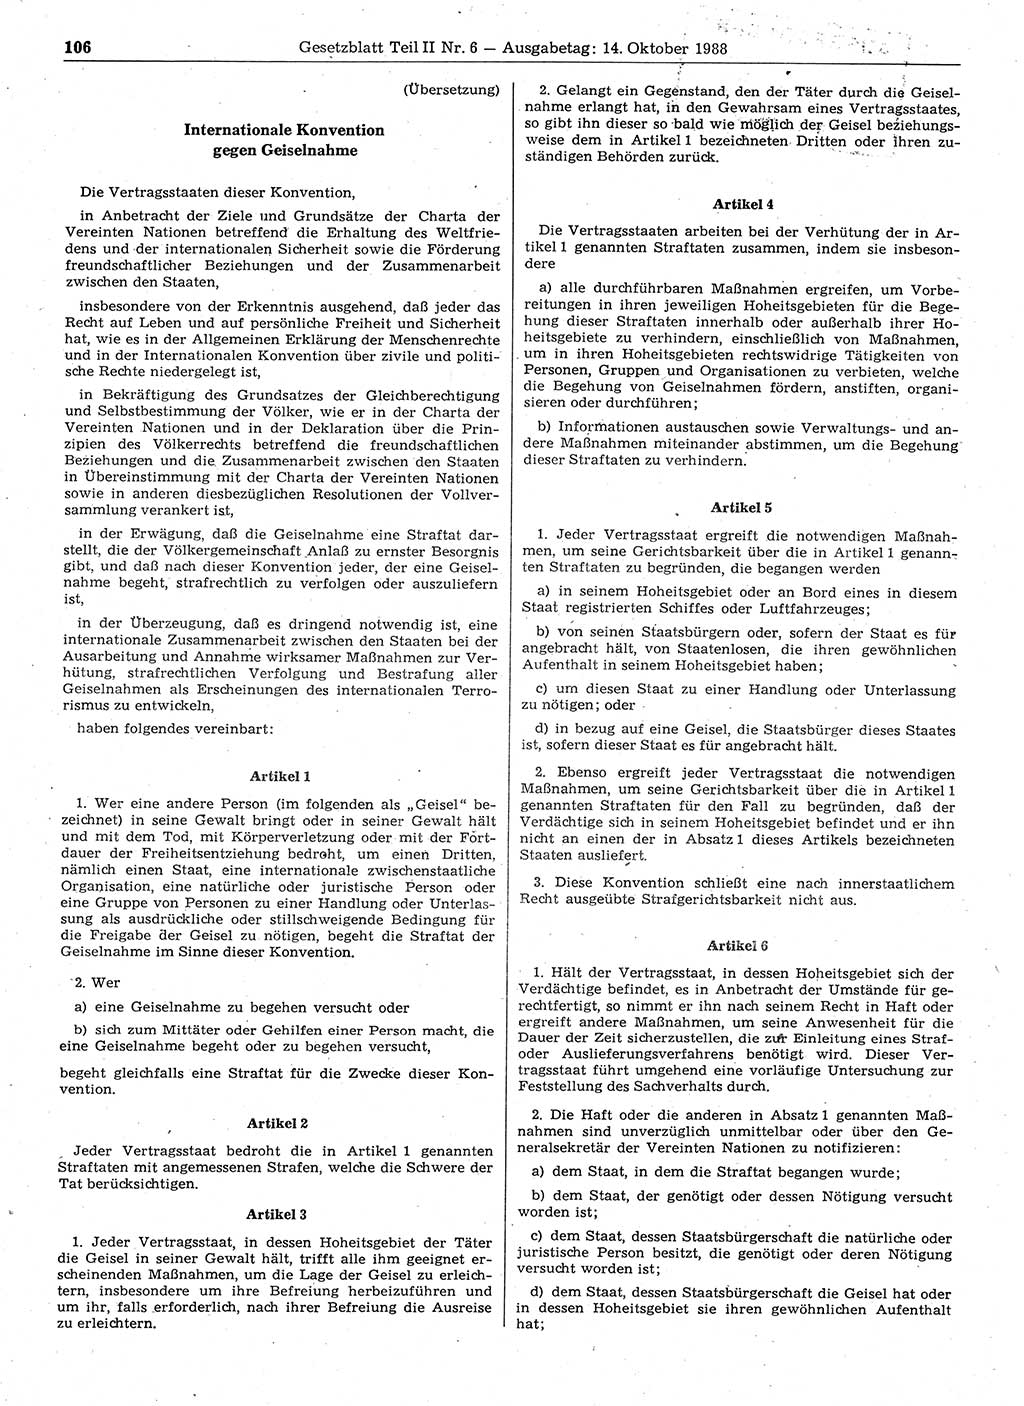 Gesetzblatt (GBl.) der Deutschen Demokratischen Republik (DDR) Teil ⅠⅠ 1988, Seite 106 (GBl. DDR ⅠⅠ 1988, S. 106)